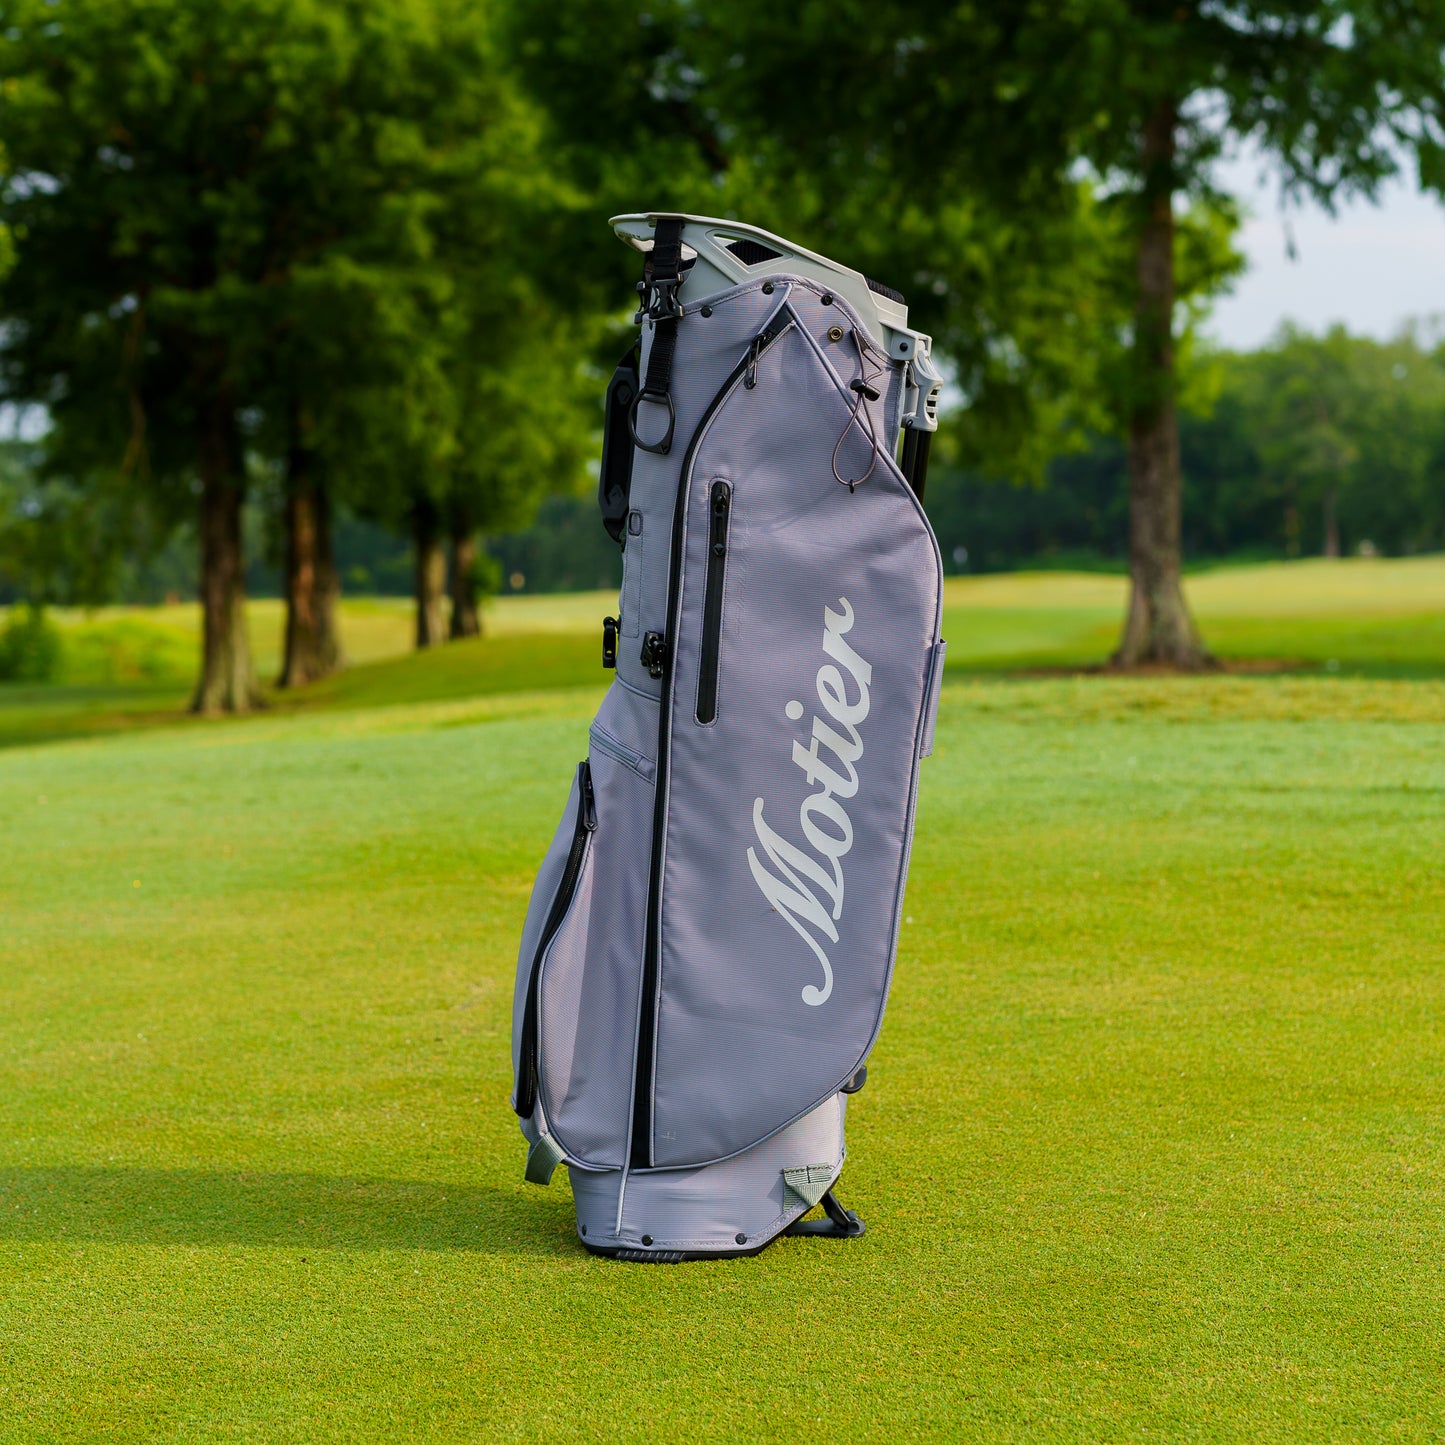 The Motier Fairway C Callaway Tour Golf Bag (Grey)